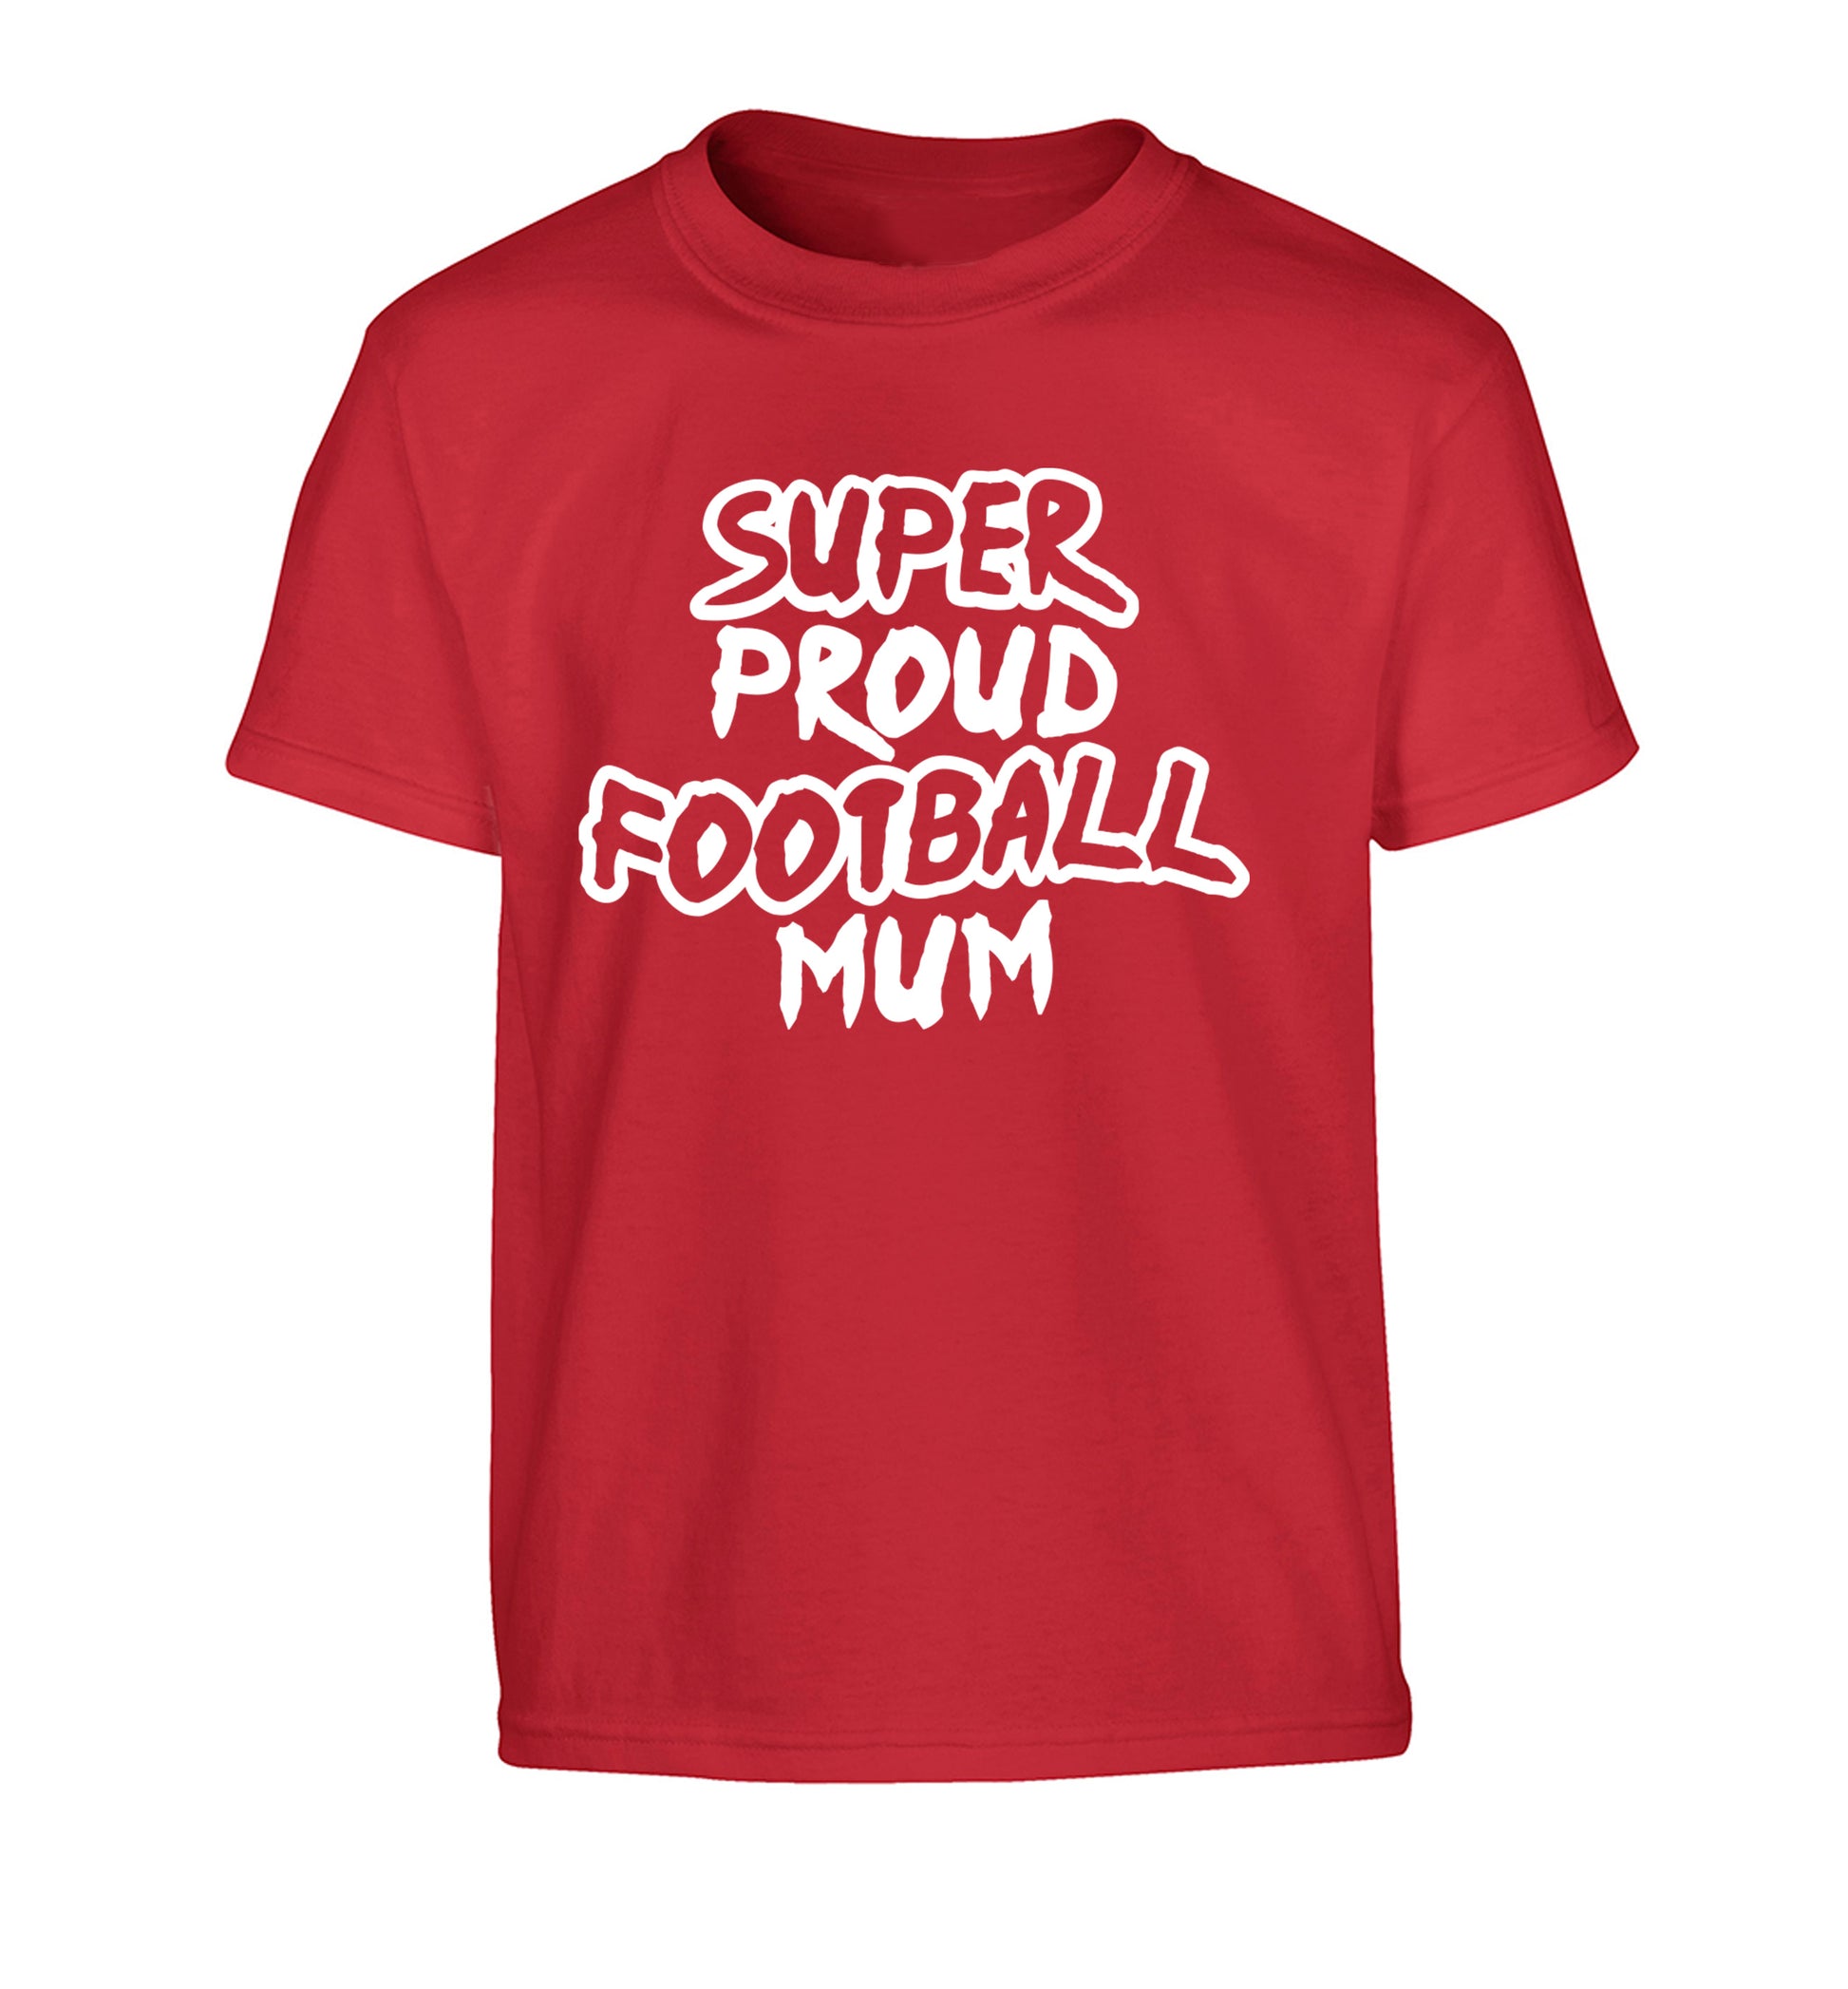 Super proud football mum Children's red Tshirt 12-14 Years